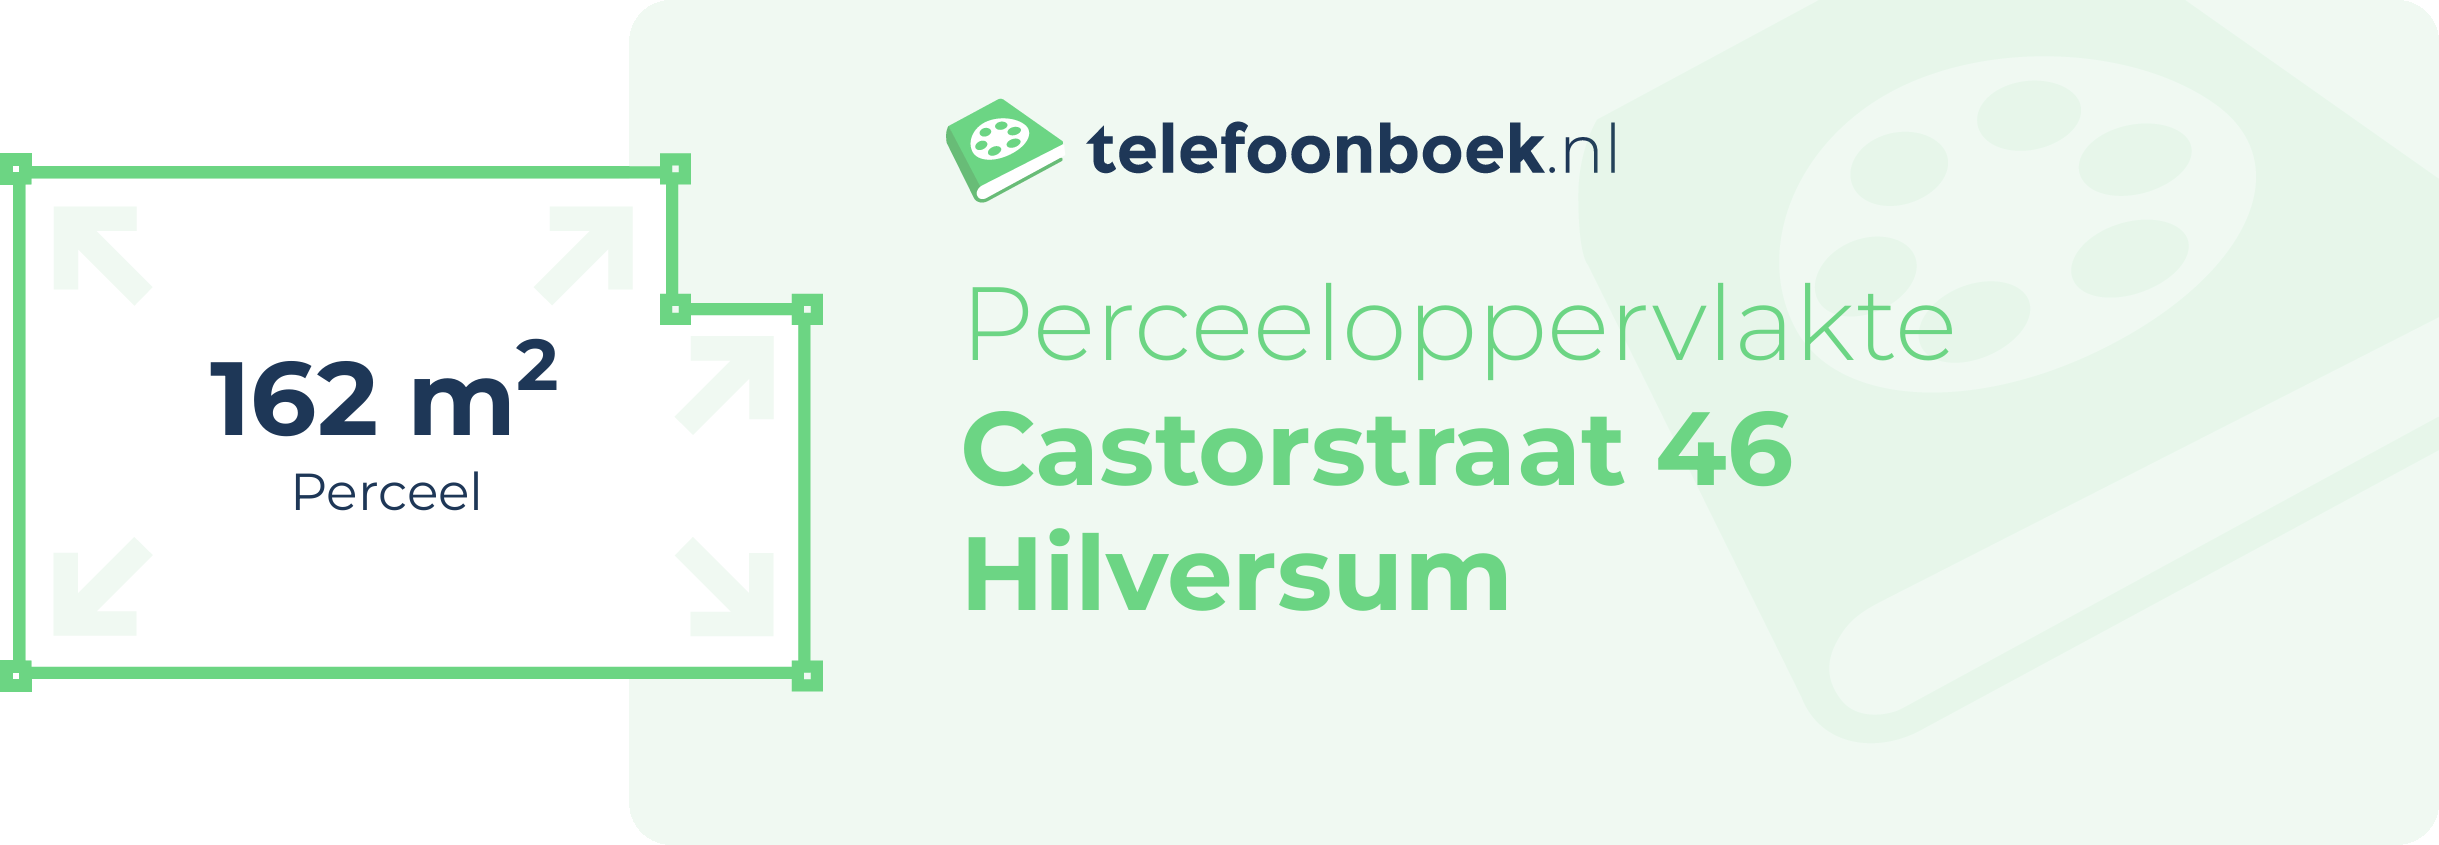 Perceeloppervlakte Castorstraat 46 Hilversum